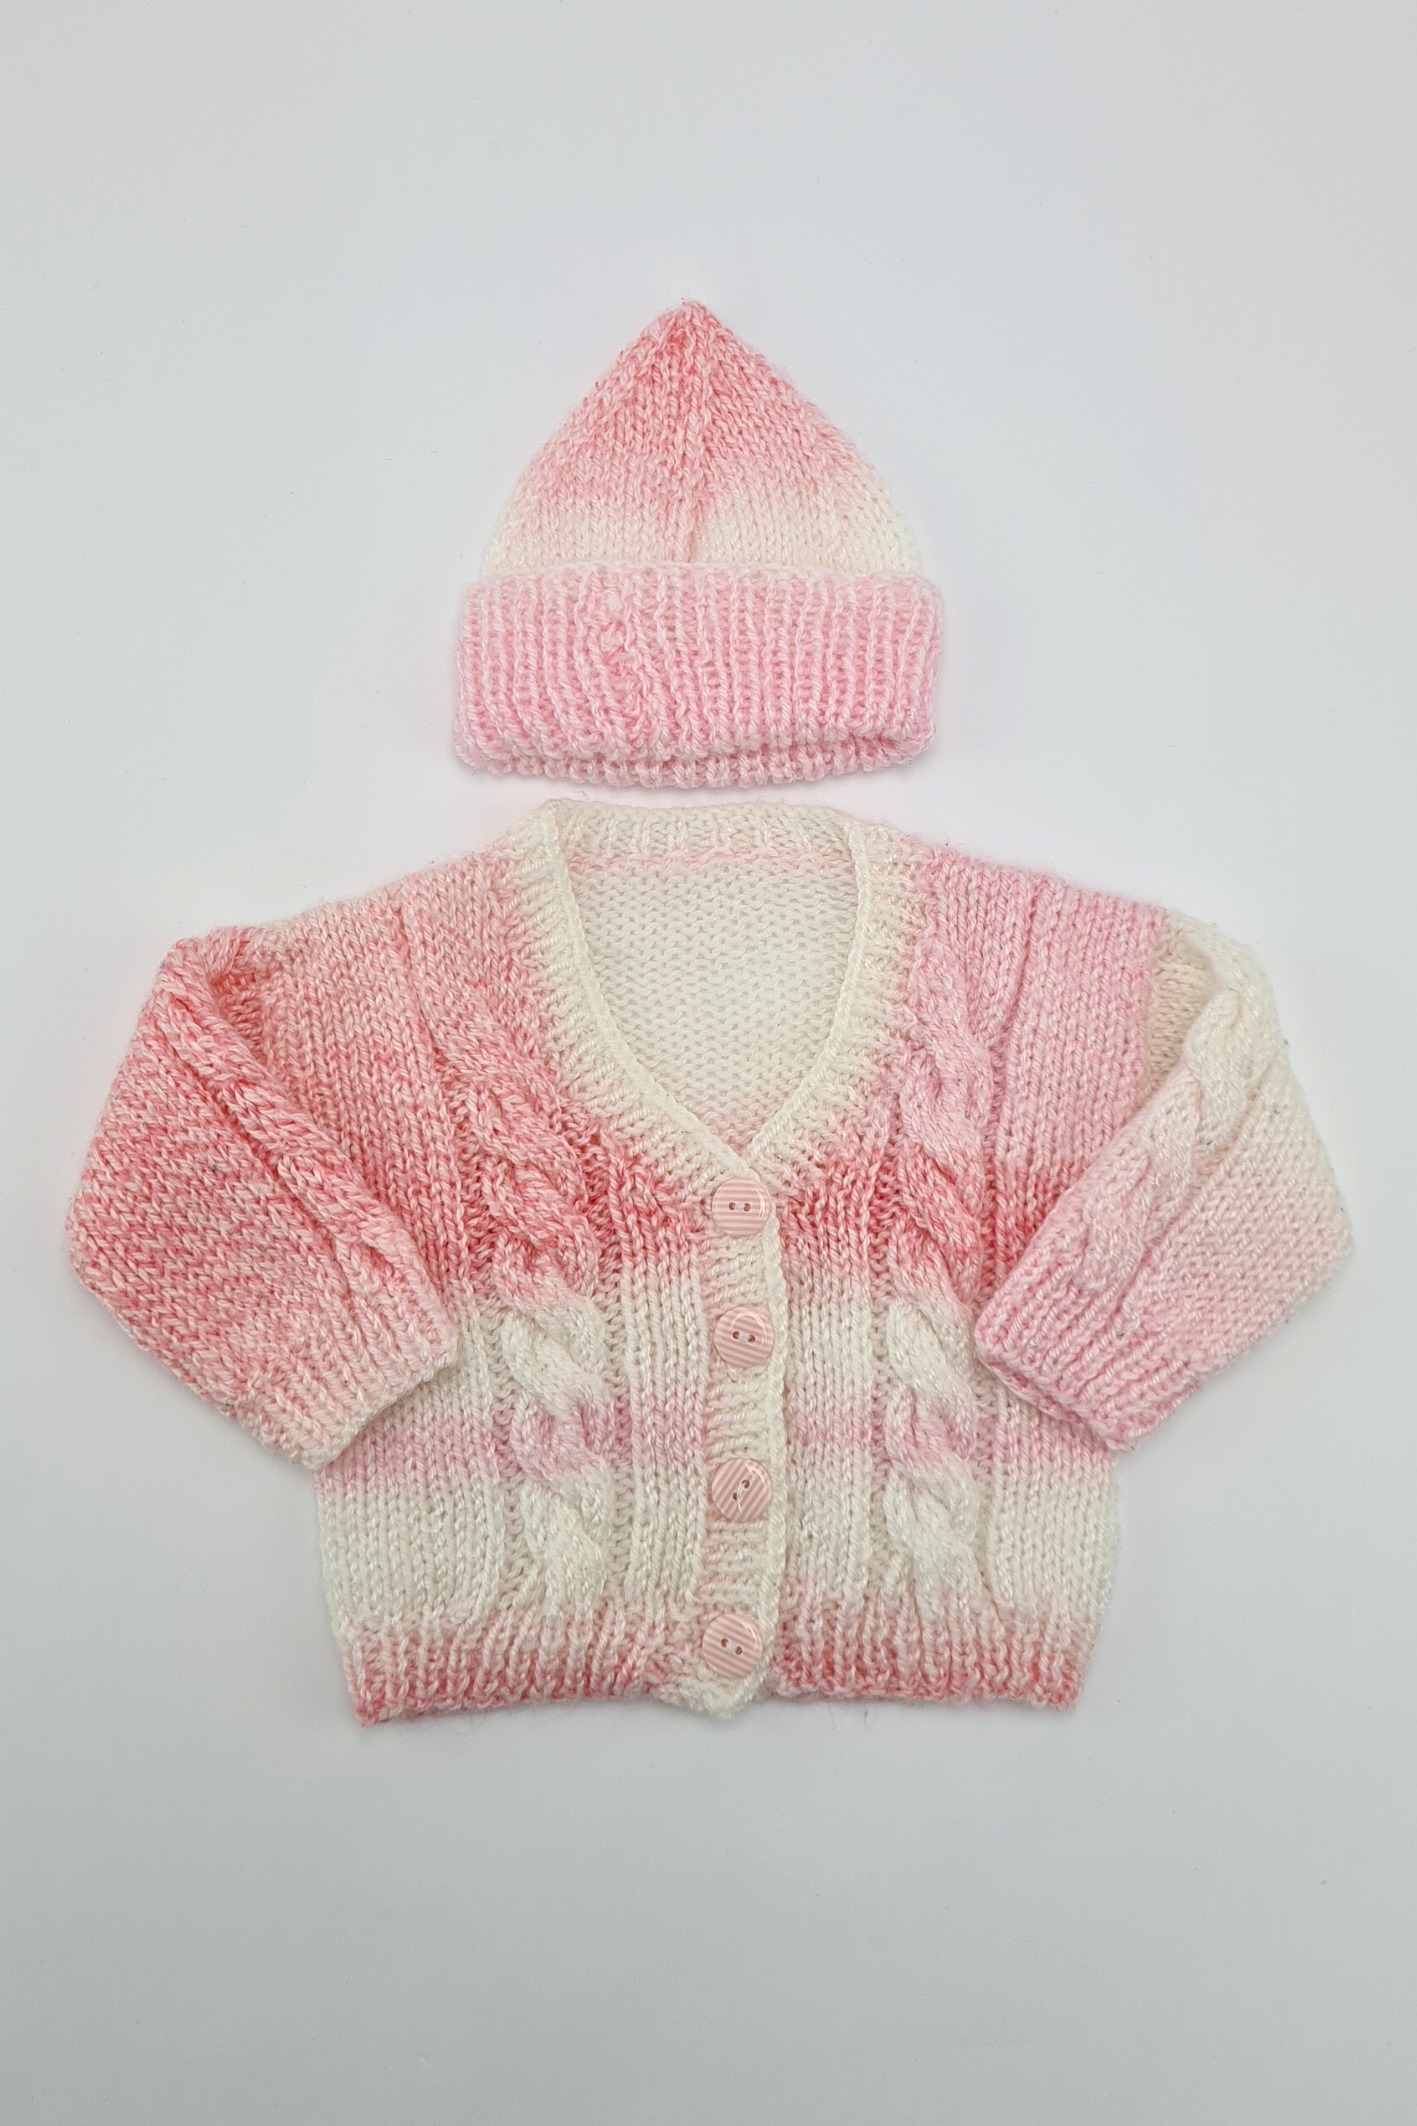 Neugeborenes (4,5 kg) – handgefertigtes Set aus Strickjacke und Mütze in Rosa und Weiß